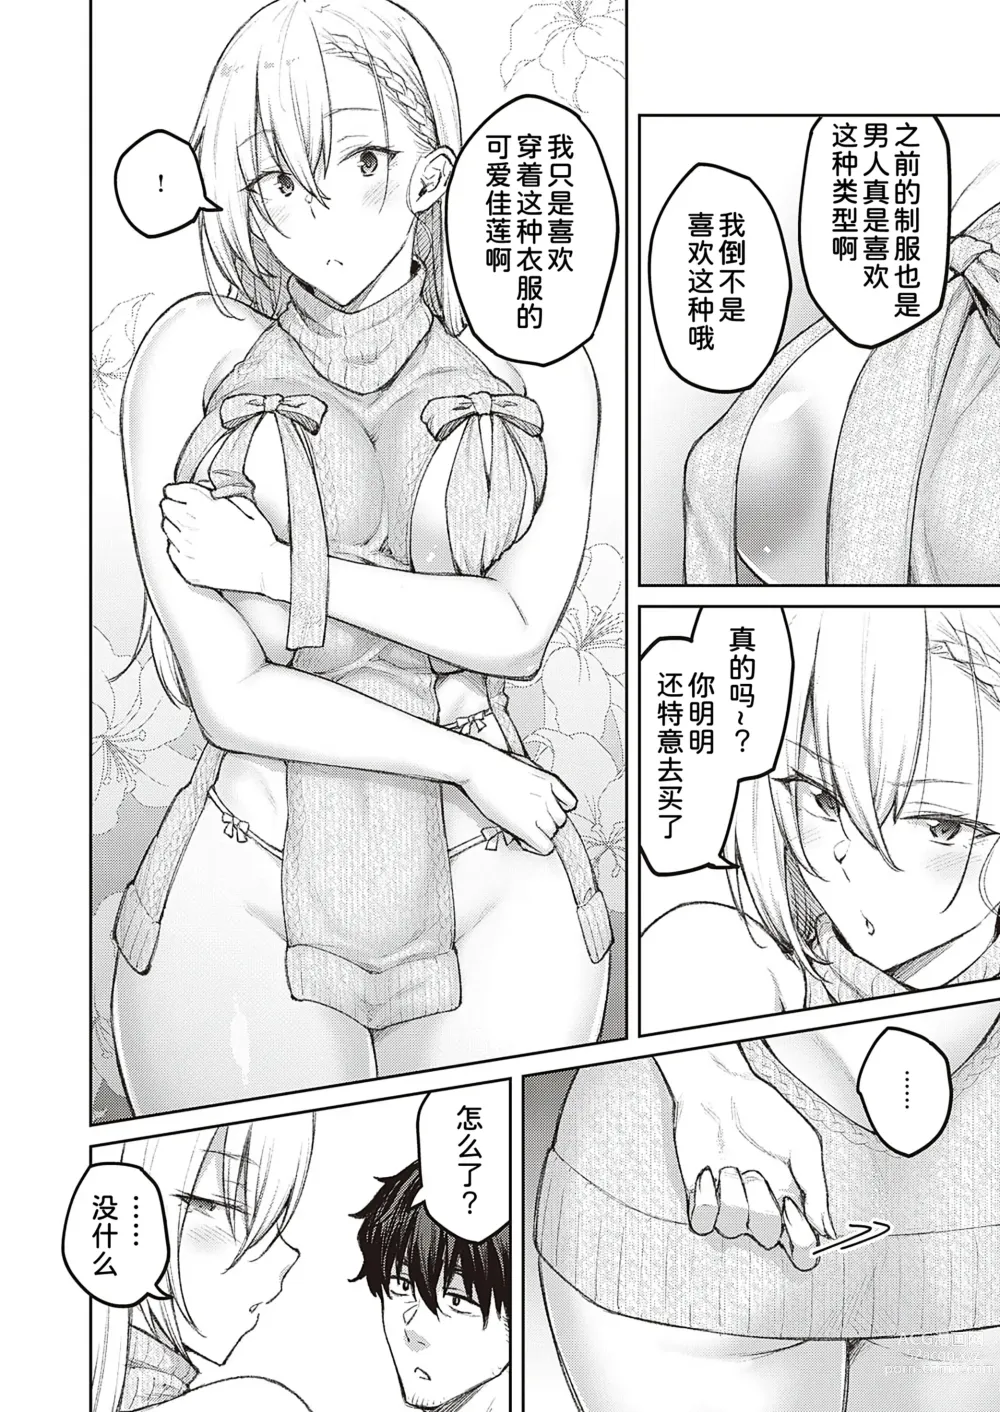 Page 5 of manga Tsugi wa Kou wa Ikanai kara na!2